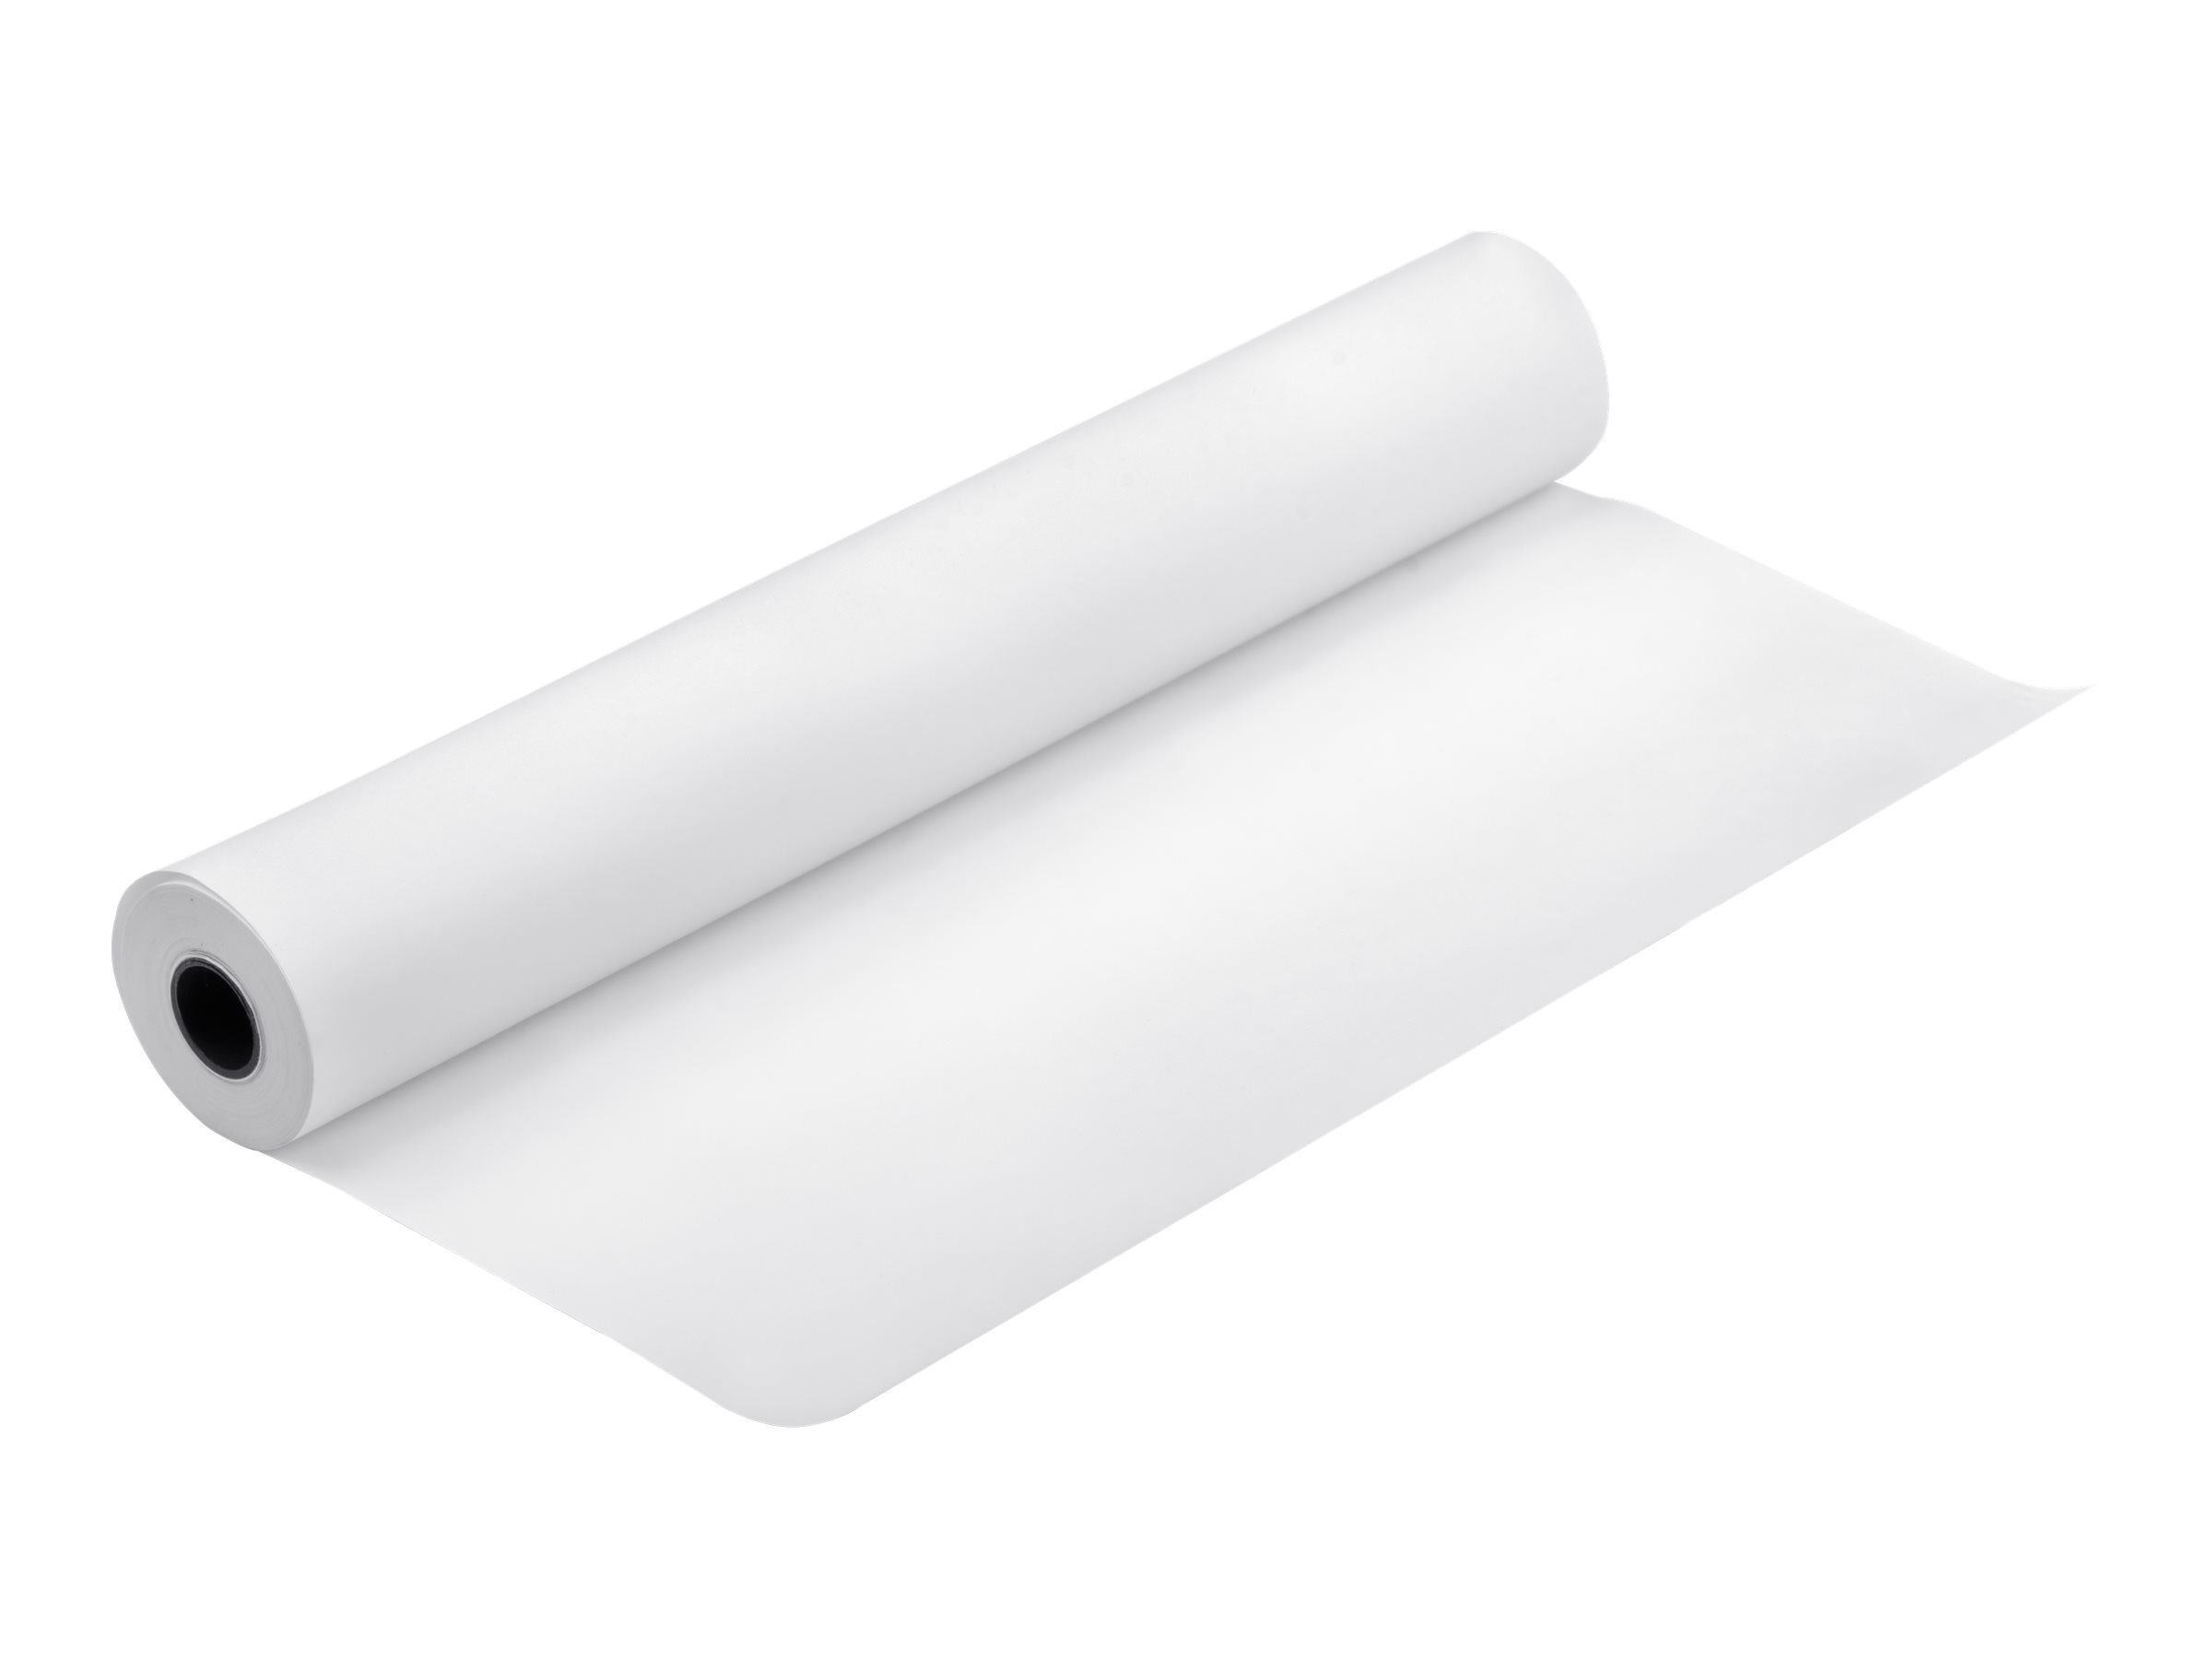 Epson Bond Paper White 80 - Weiß - Rolle (91,4 cm x 50 m) - 80 g/m² - 1 Rolle(n) Bondpapier - für Stylus Pro 11880, Pro 9890; SureColor SC-P20000, T5200, T5400, T5405, T7000, T7200